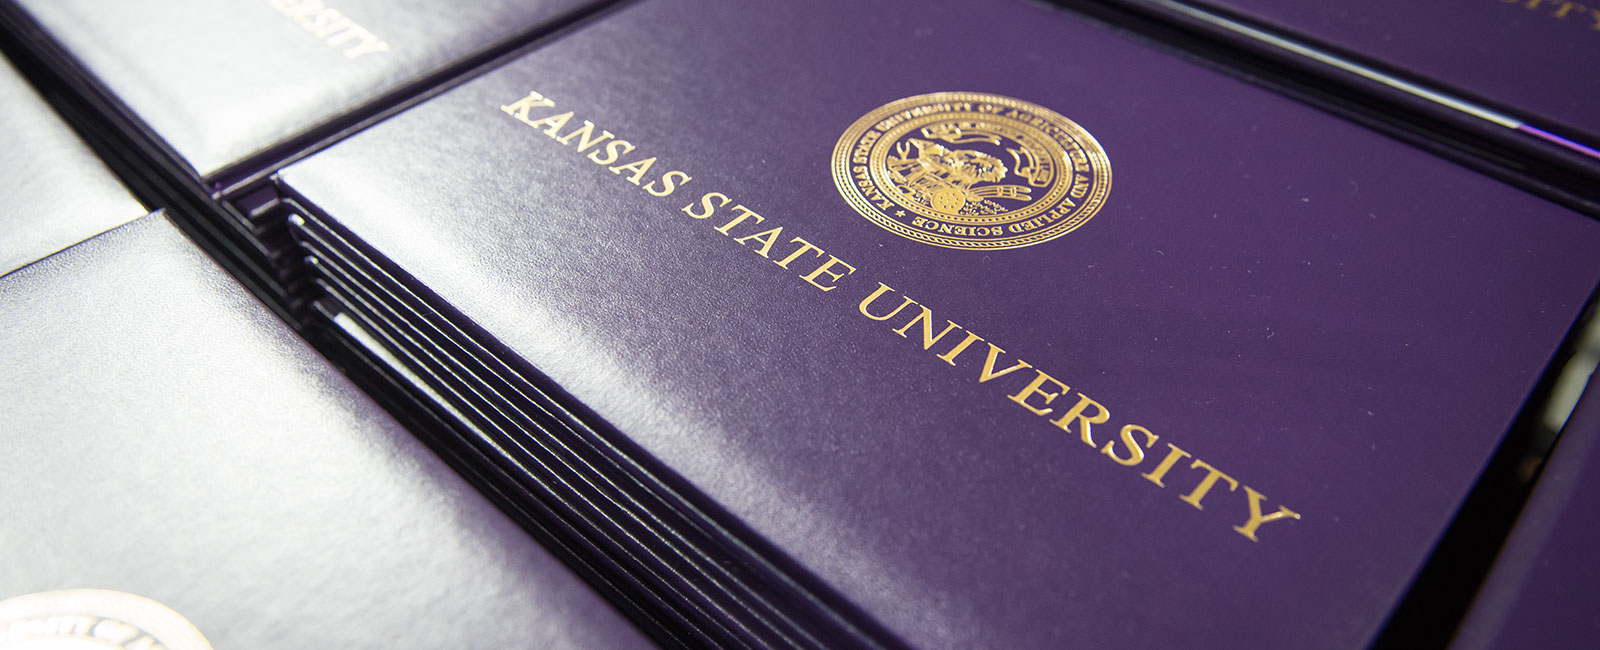 Kansas State University purple diploma covers